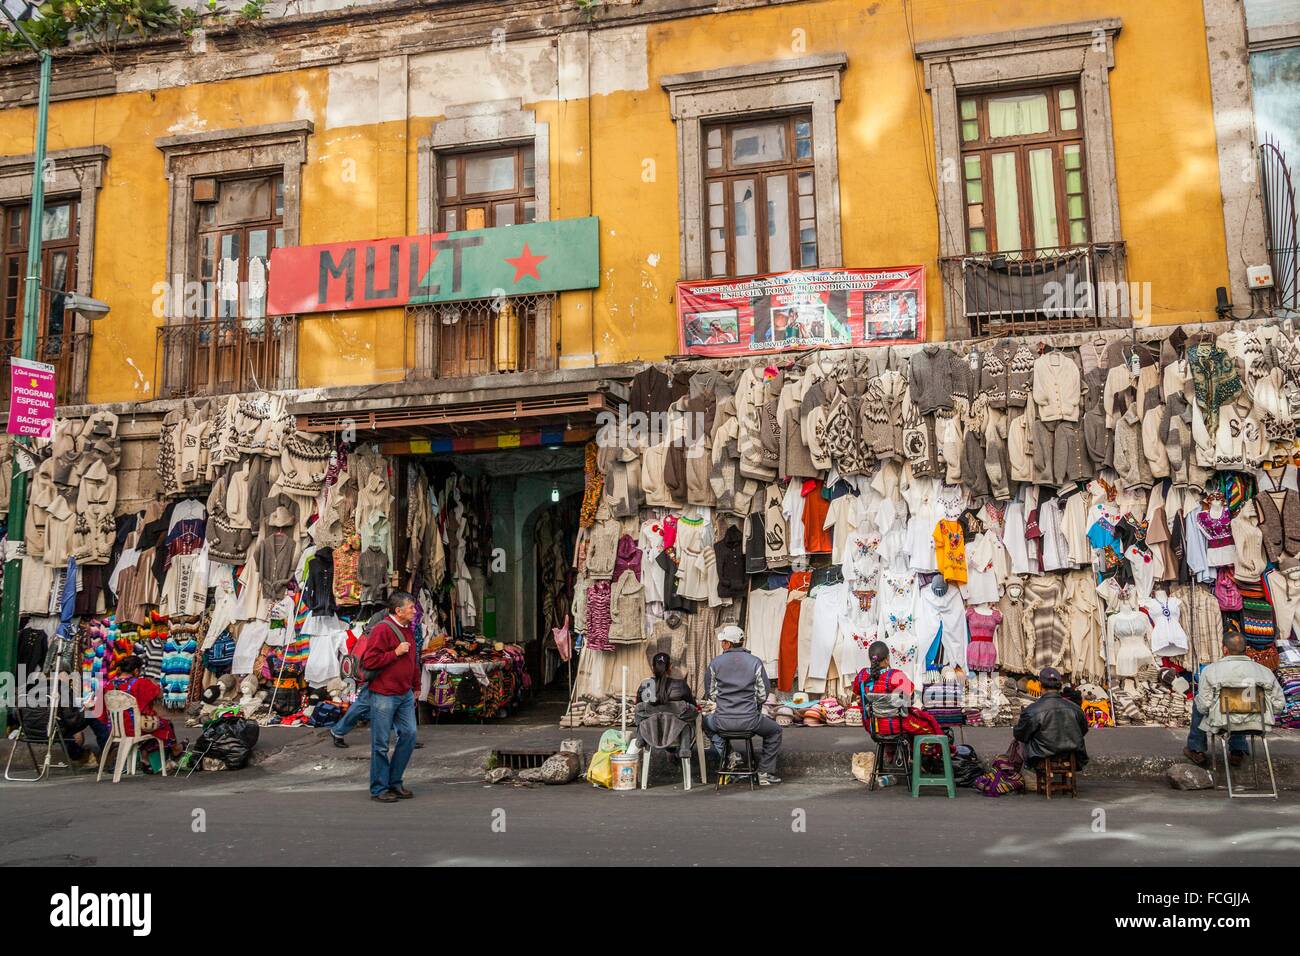 La vie de la rue, Mexico City, Mexico DF, Mexique Banque D'Images